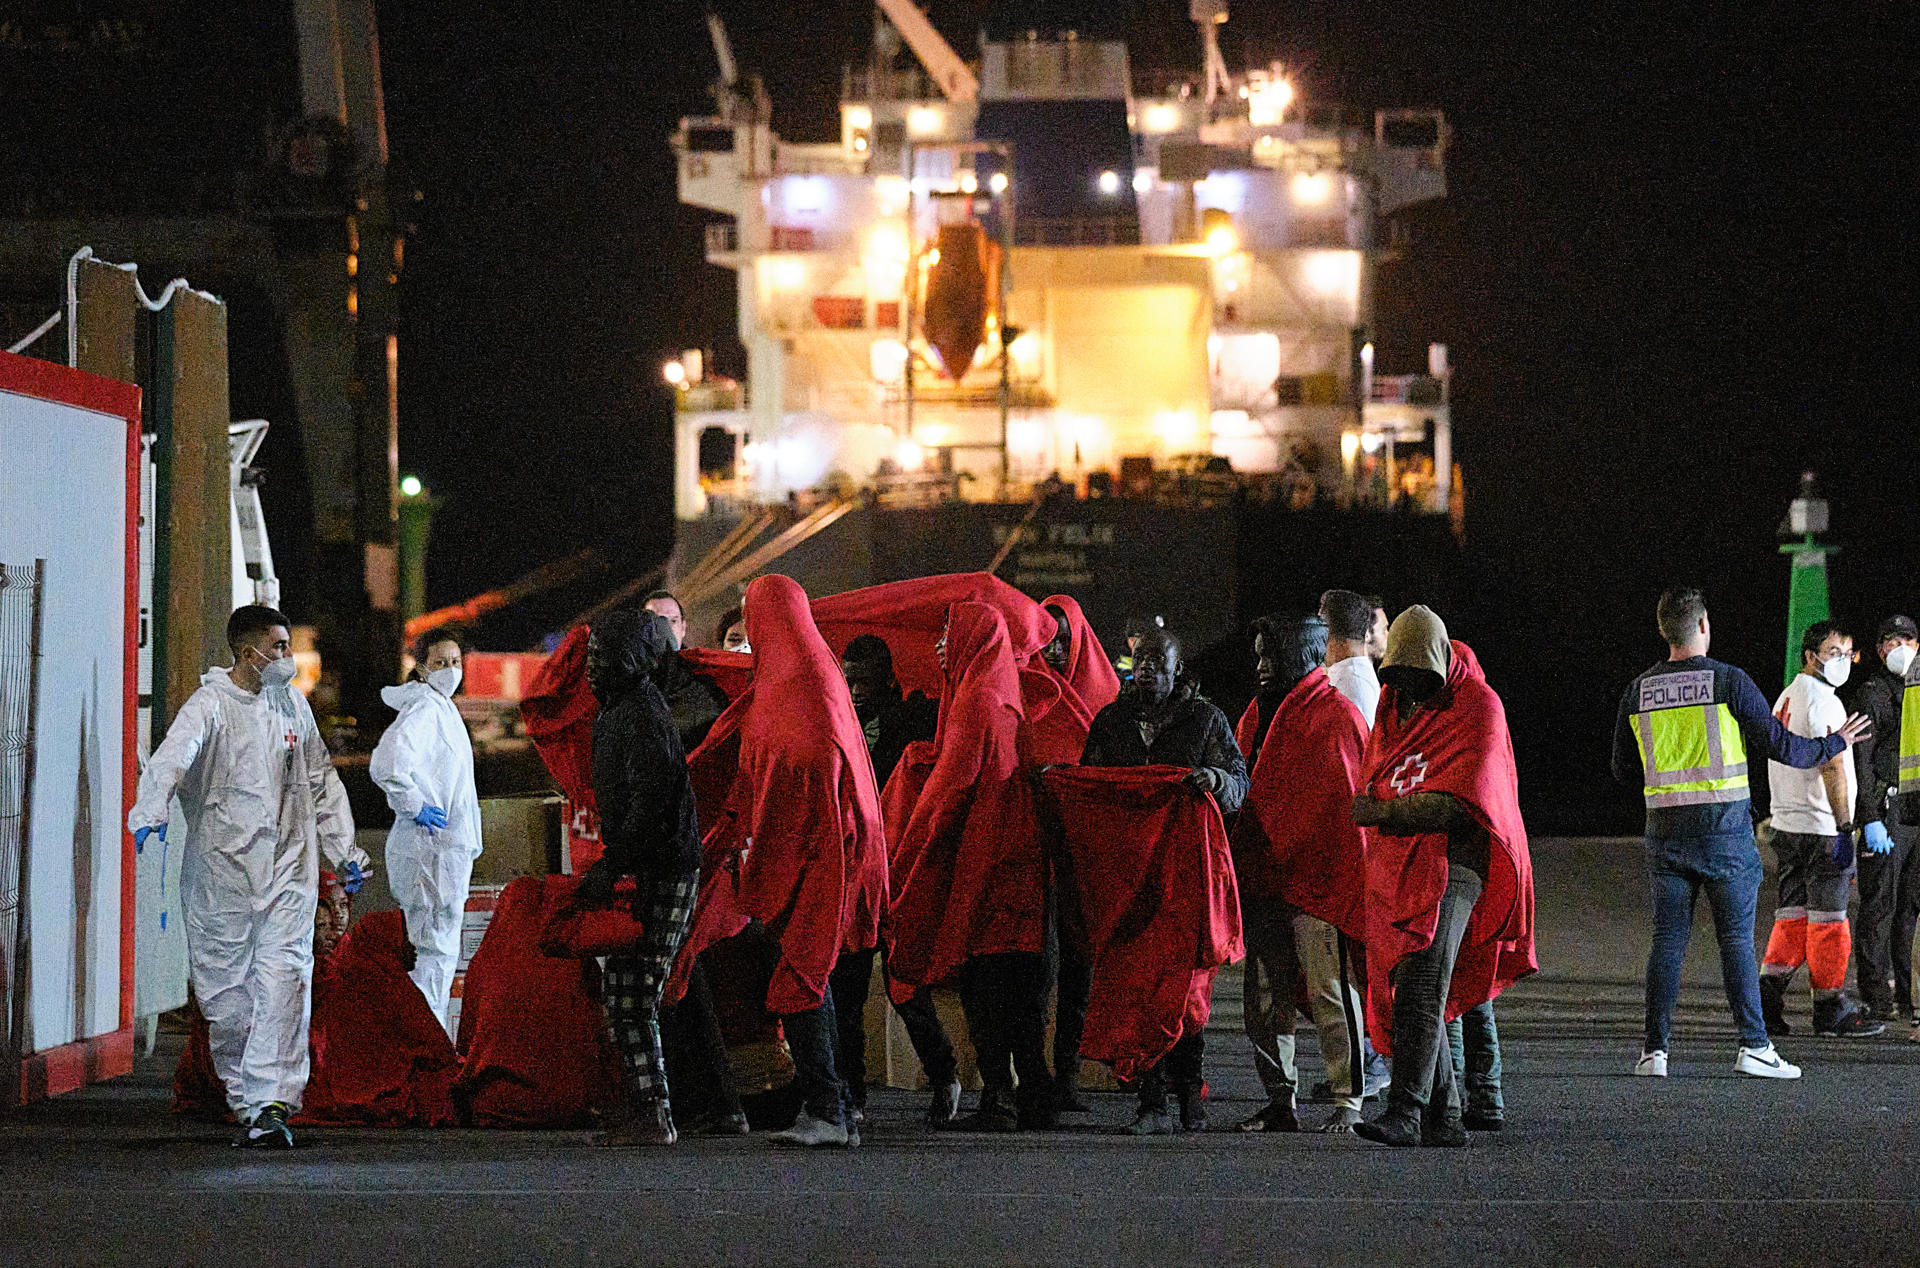 Foto de archivo tomada el 5 de marzo a la llegada a Puerto del Rosario de un grupo de inmigrantes rescatados por Salvamento Marítimo de dos lanchas neumáticas con las que trataban de llegar a Fuerteventura. EFE/Javier Melián